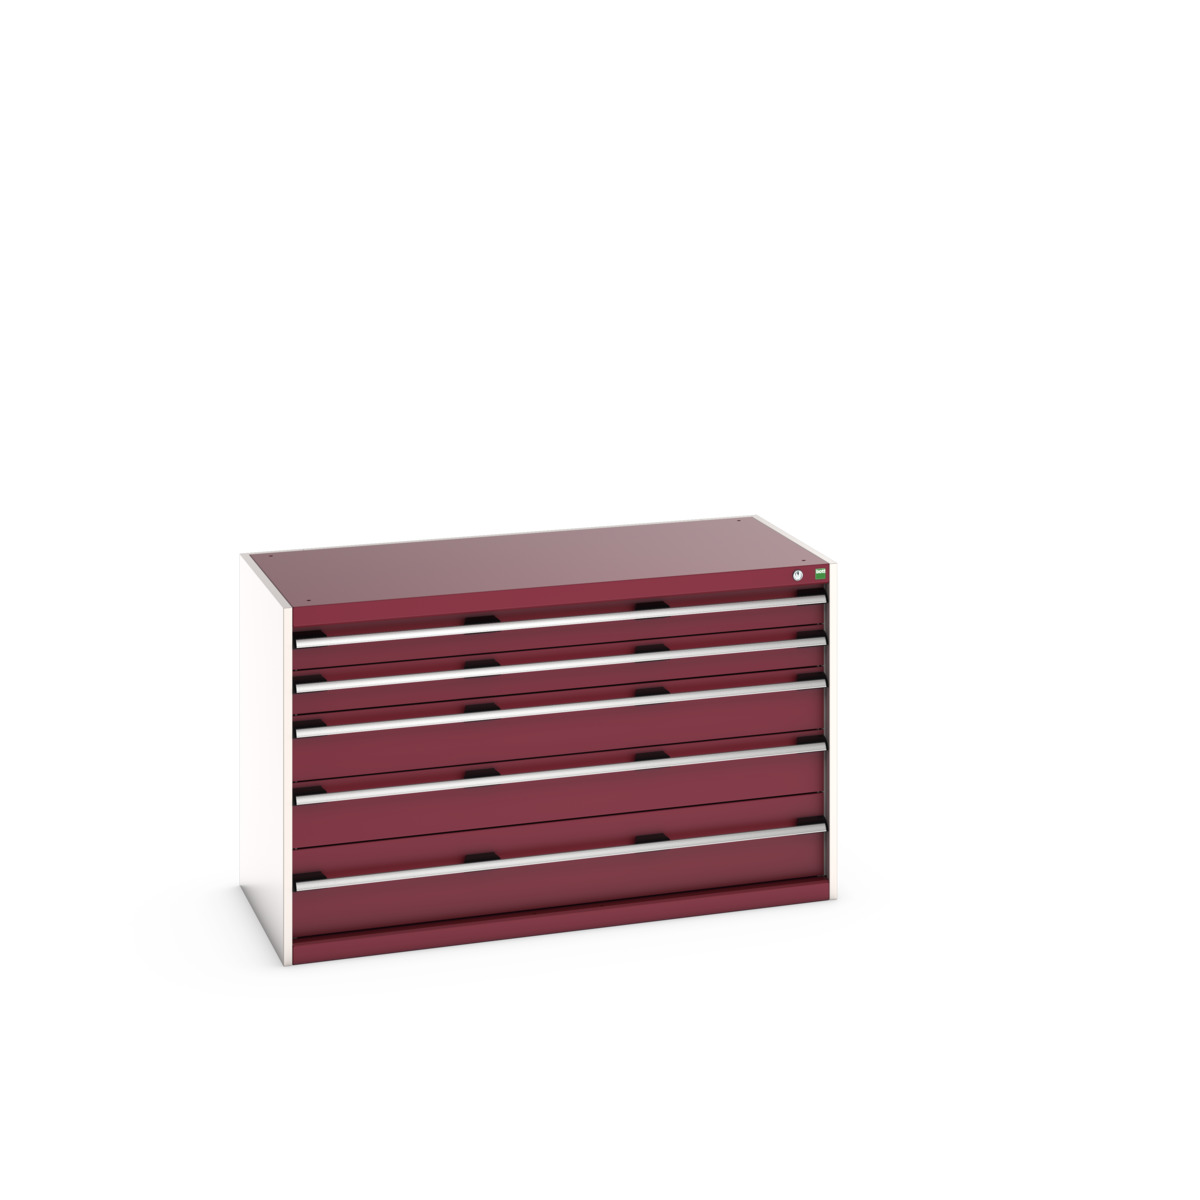 40022107.24V - cubio drawer cabinet